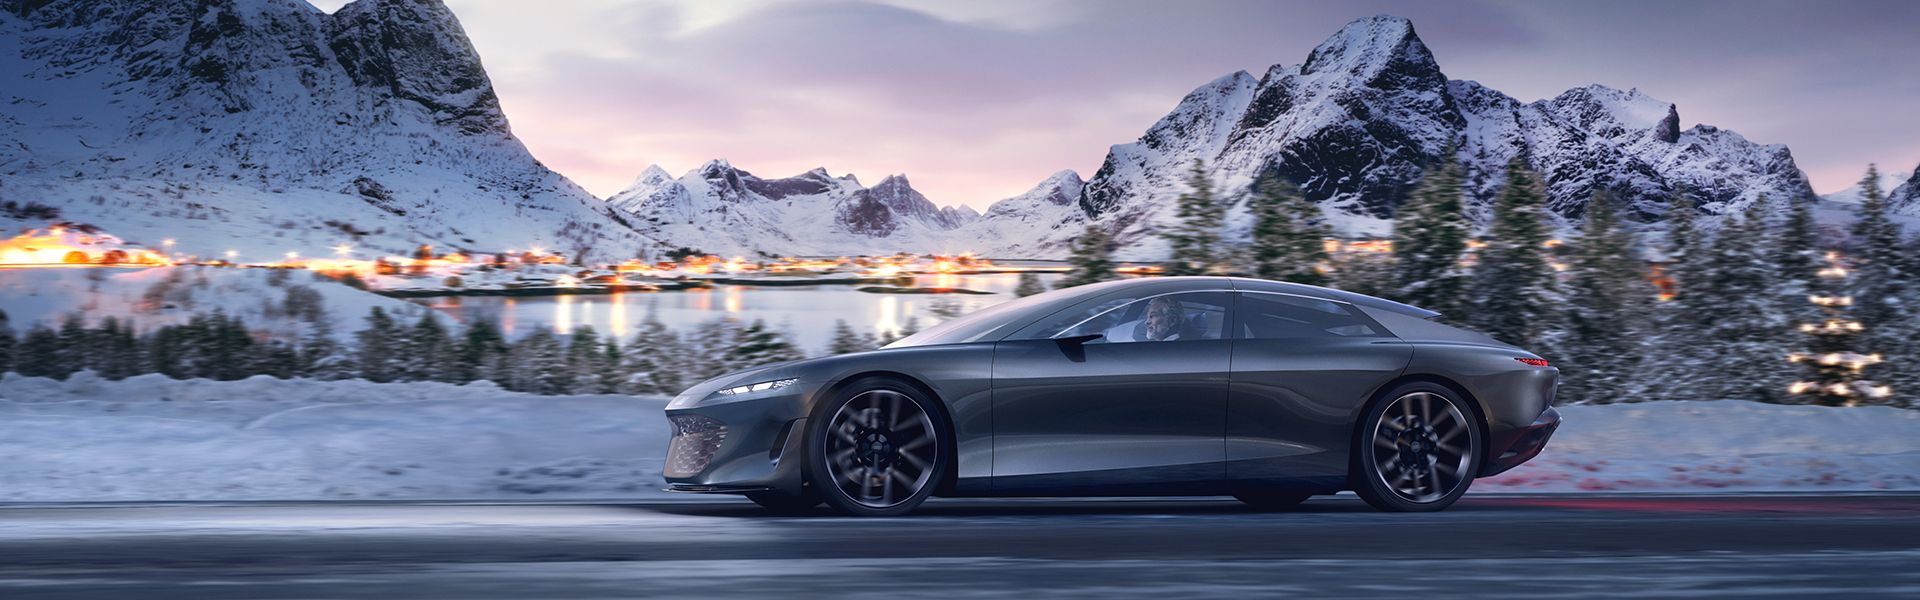 Audi grandsphere concept roulant sur la route devant un paysage enneigé avec des montagnes.